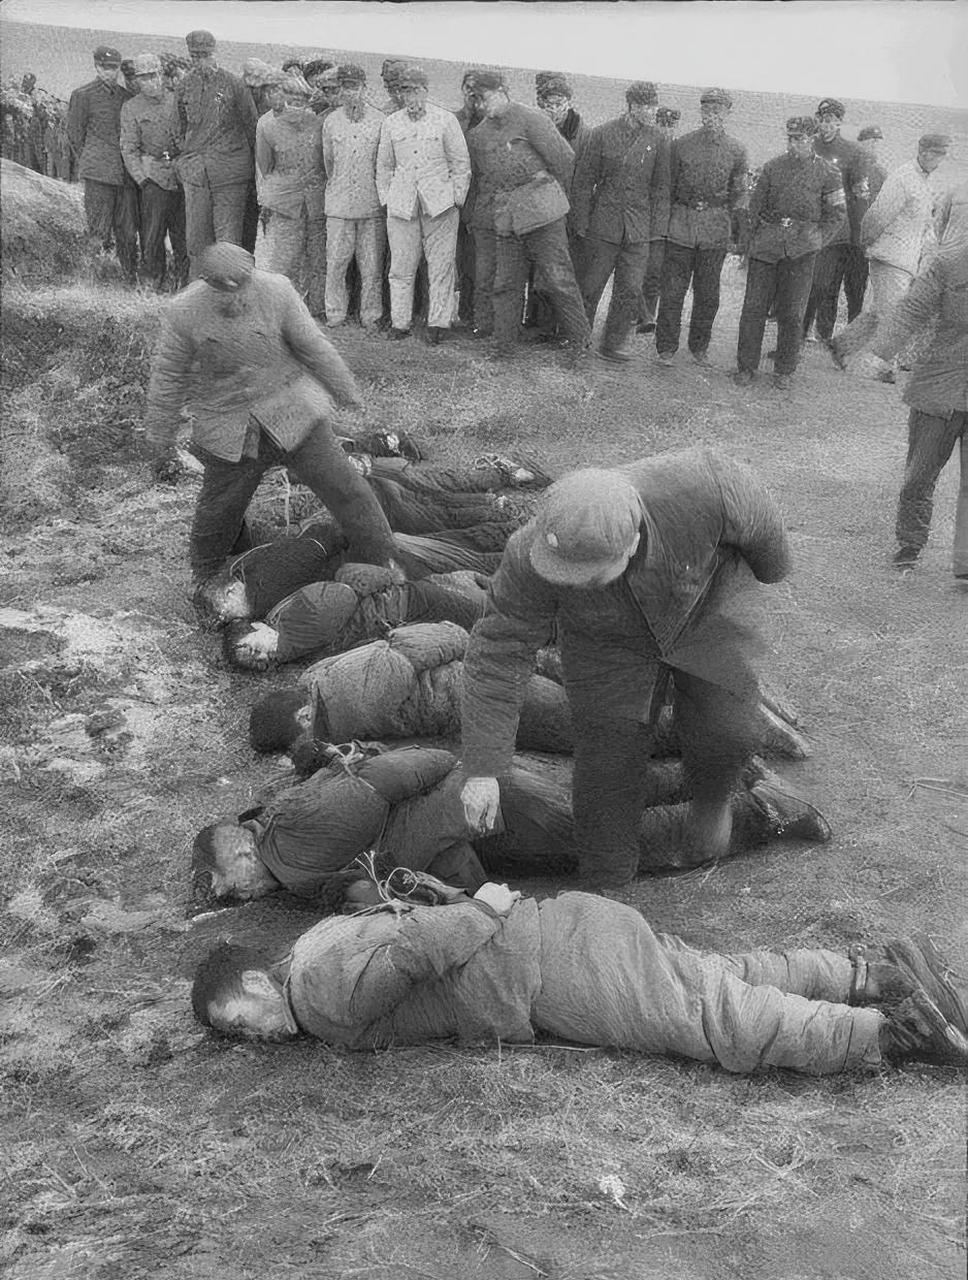 这是60年代哈尔滨,死刑犯公开处决的现场,照片中的他